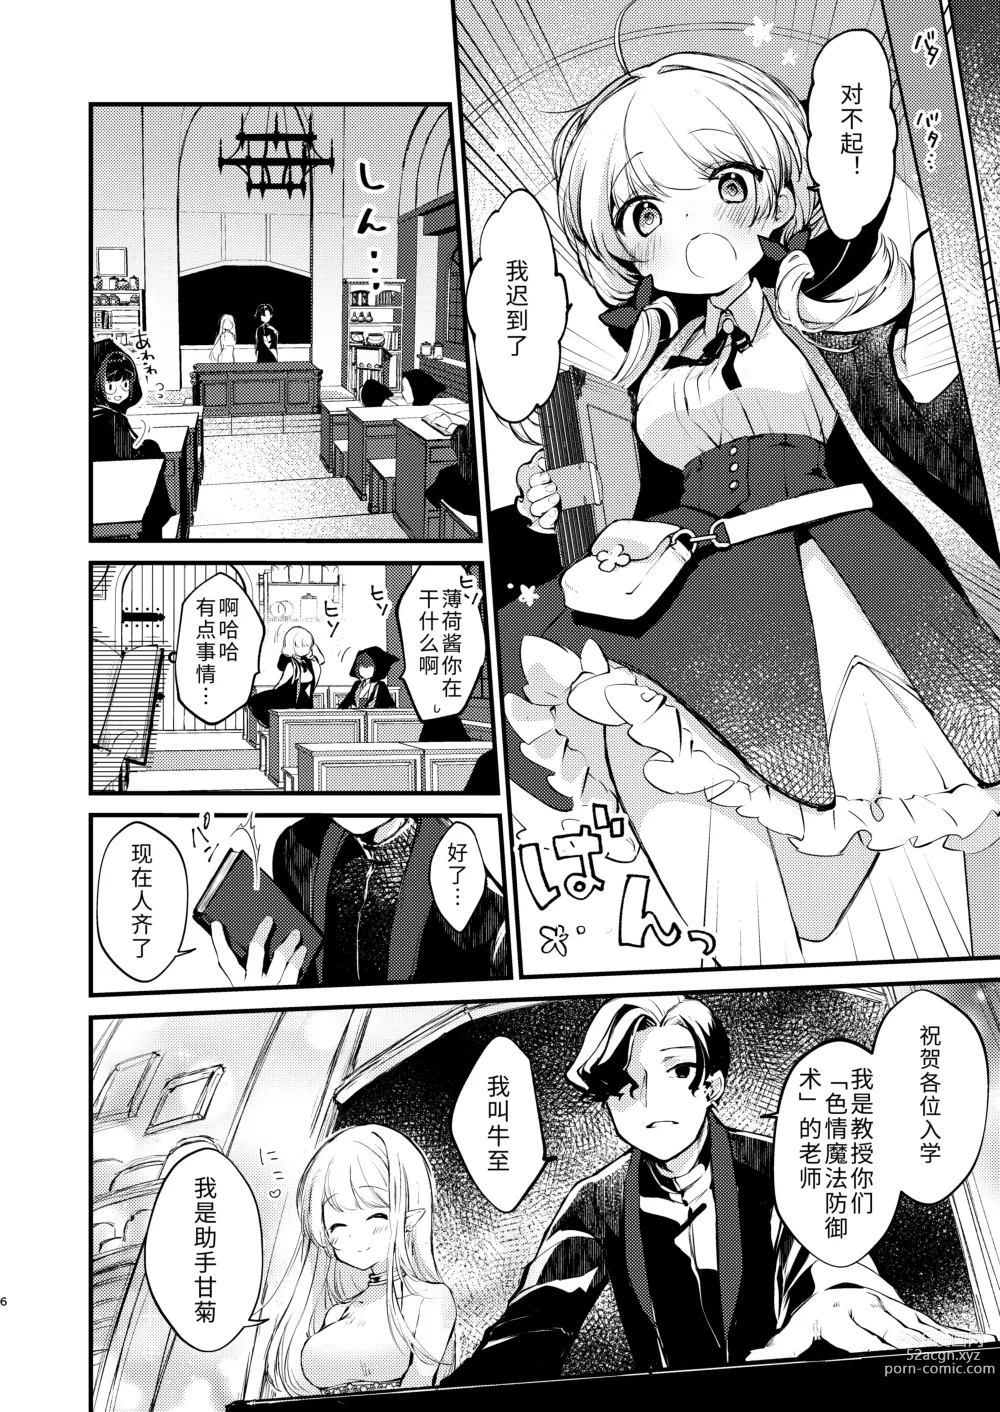 Page 5 of doujinshi Himitsu no Tomodachi - The Secret Friend